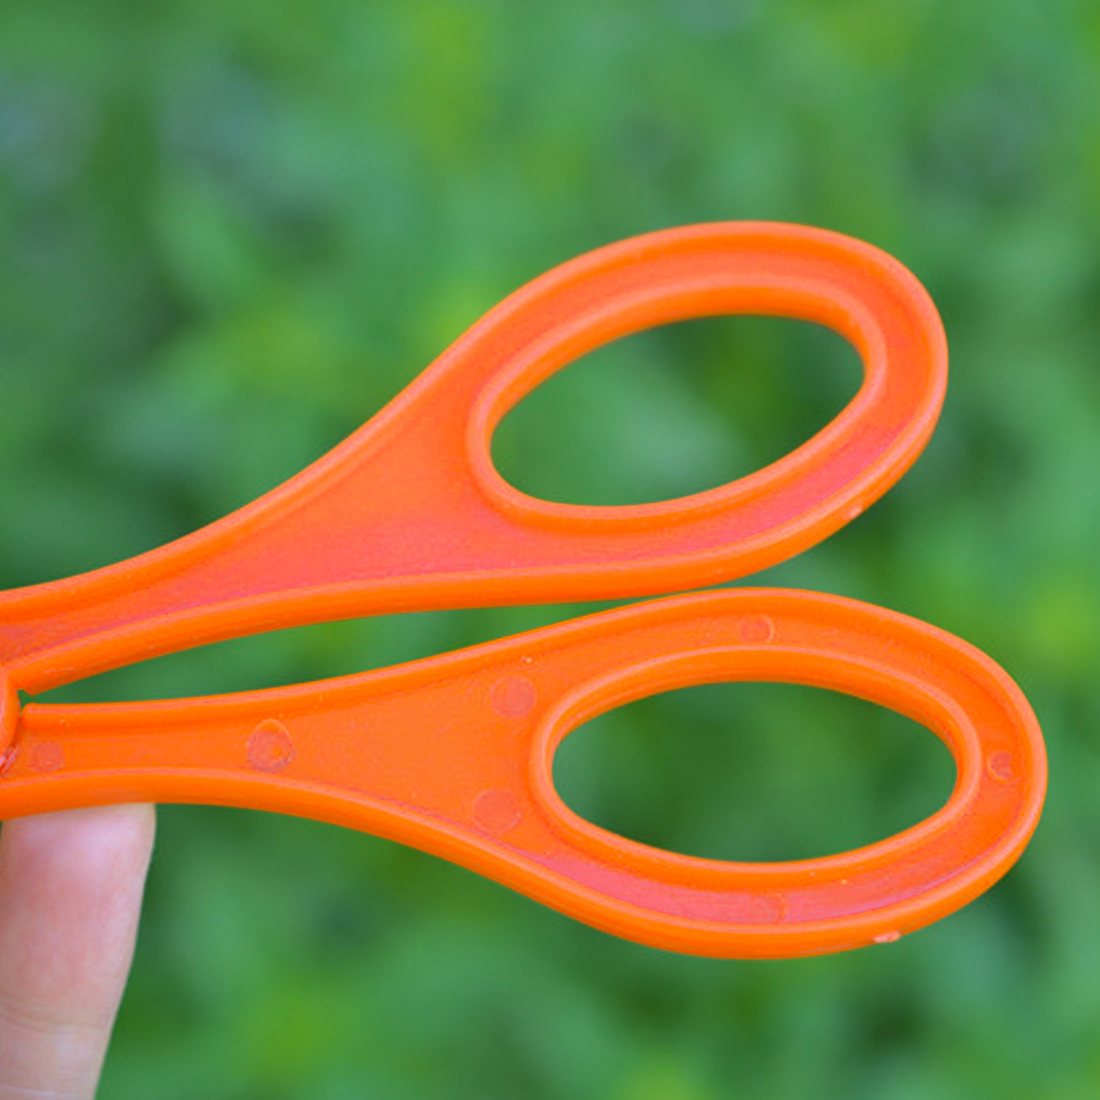 1pc Plastic Bug Insect Catcher Scissors Tongs Tweezers For Kids Children Toy Handy Tool